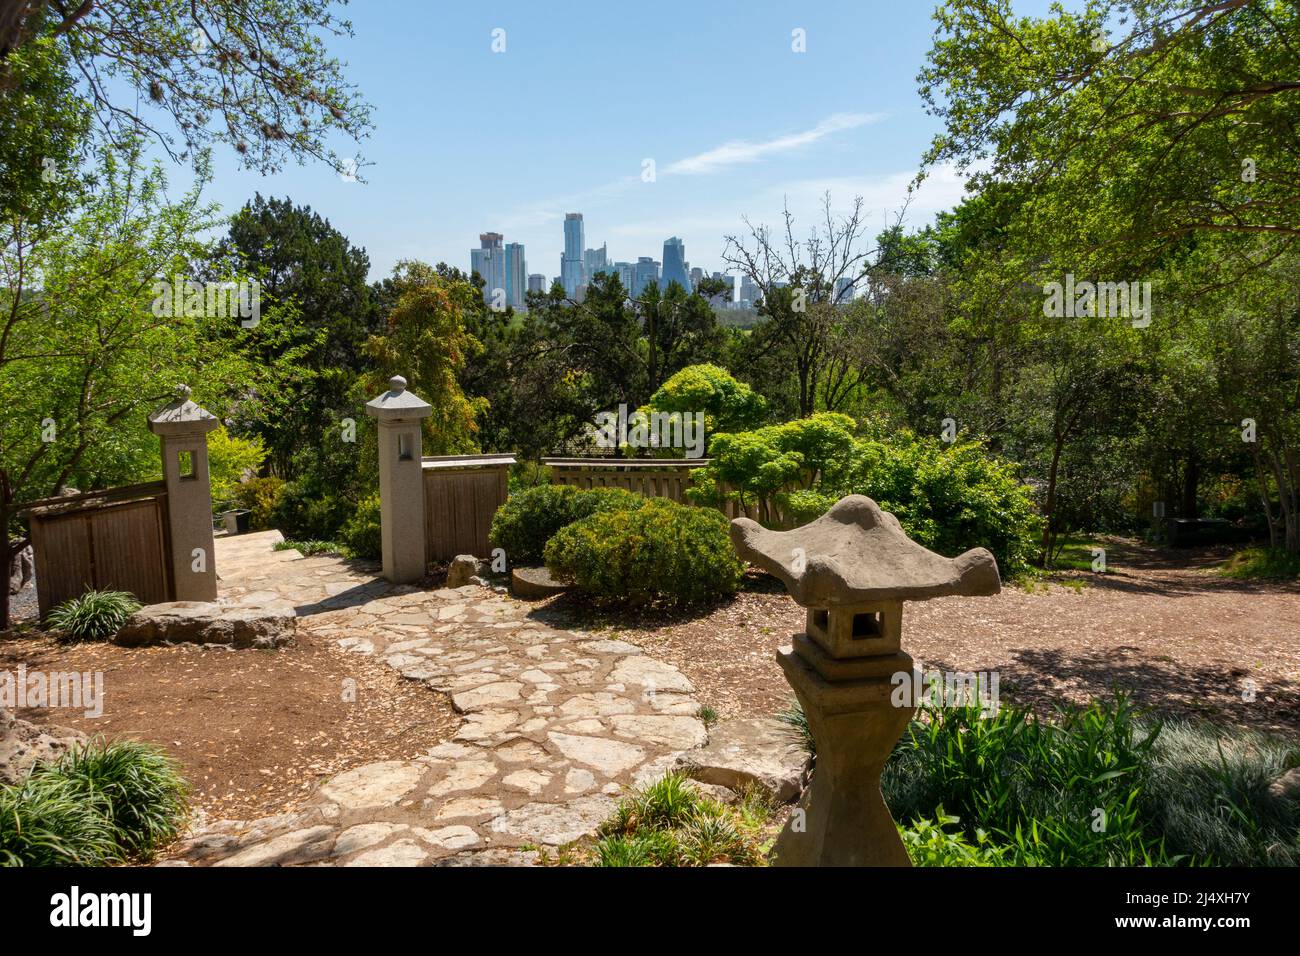 États-Unis Texas Austin Zilker jardin botanique jardin Zen asiatique vue sur la ville Banque D'Images